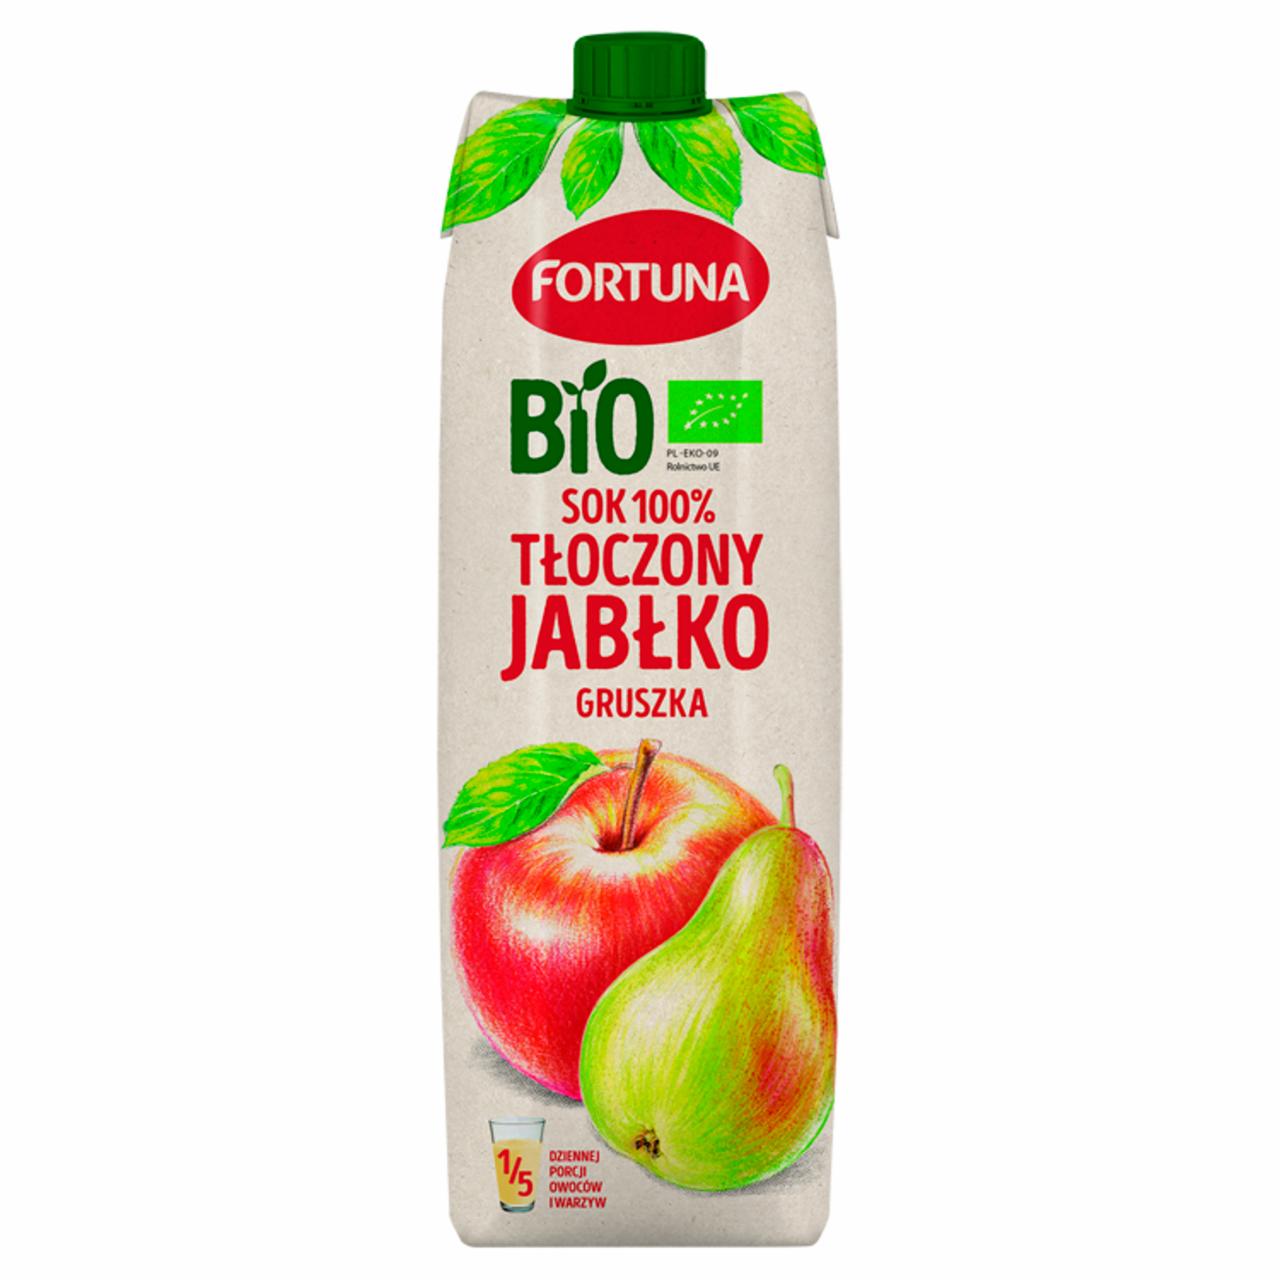 Zdjęcia - Fortuna Bio Sok 100% tłoczony jabłko gruszka 1 l